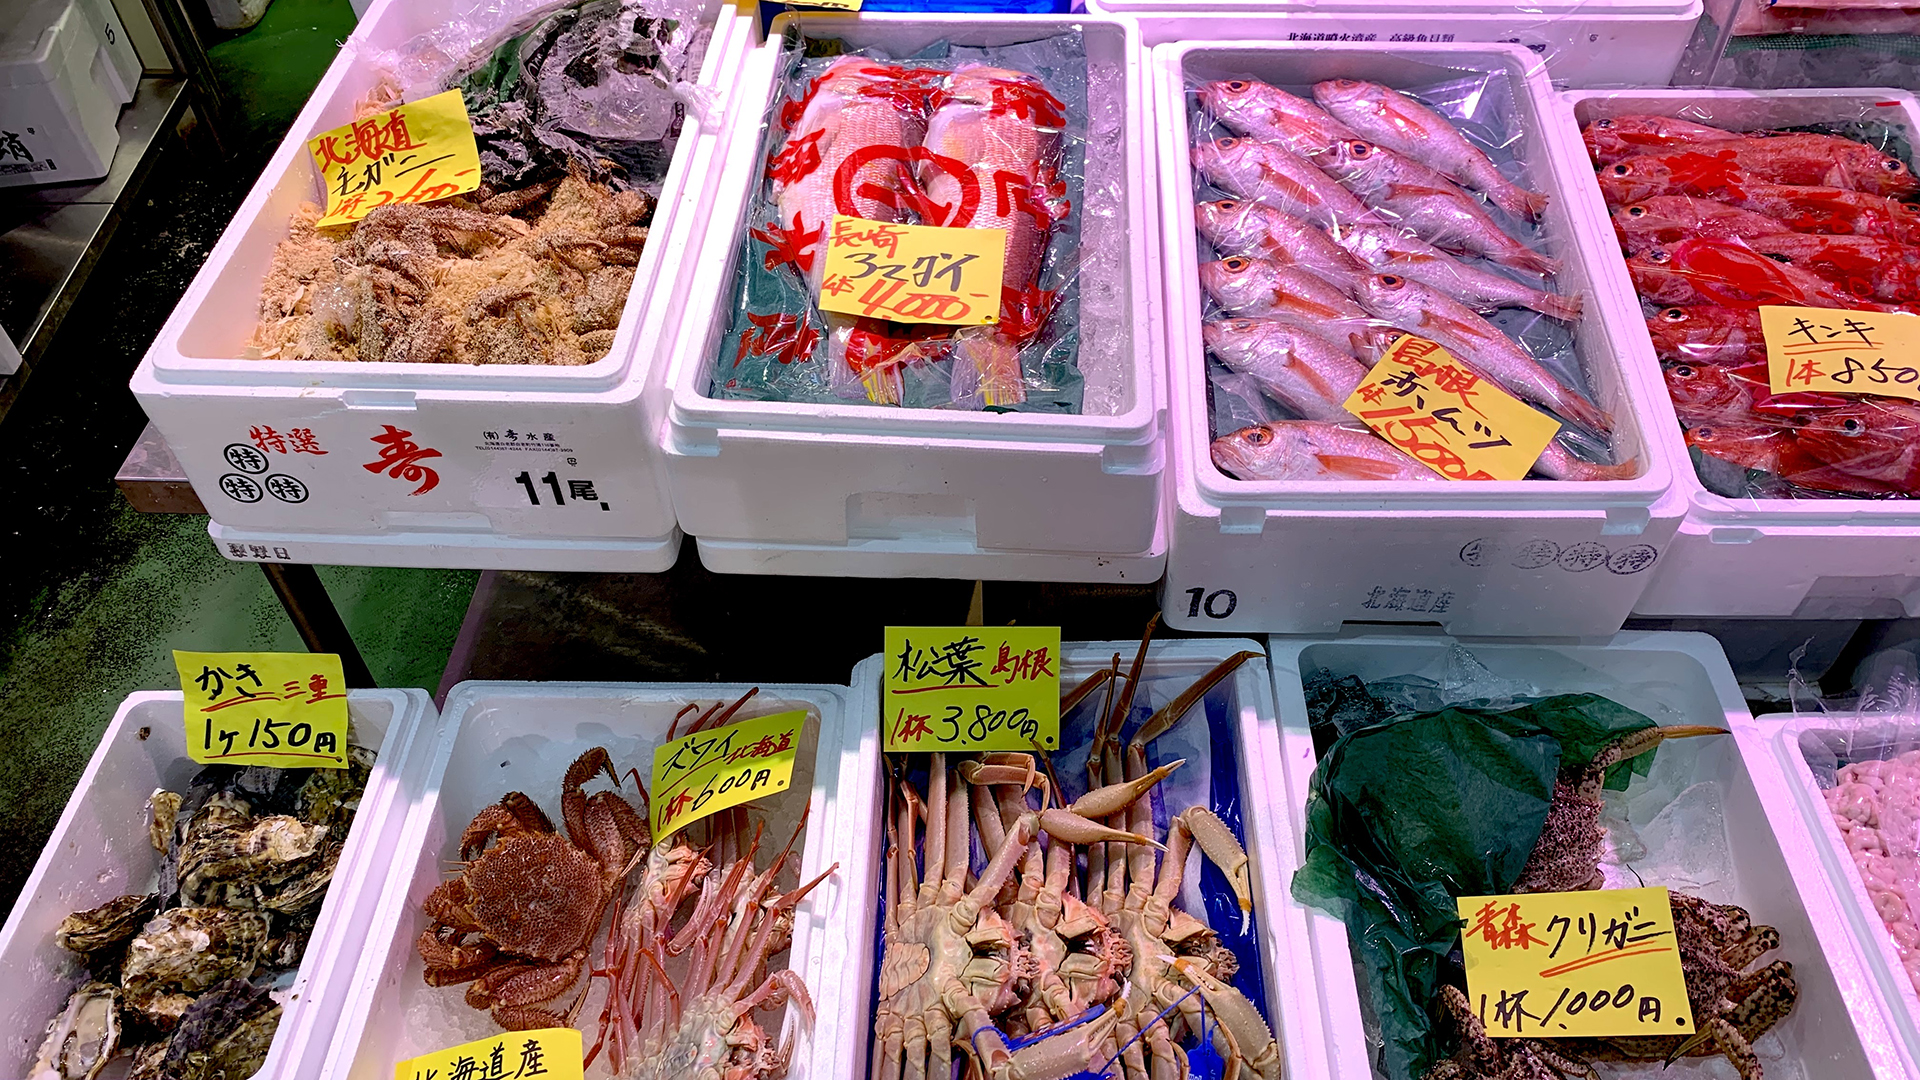 新鮮な築地/豊洲市場の鮮魚の写真